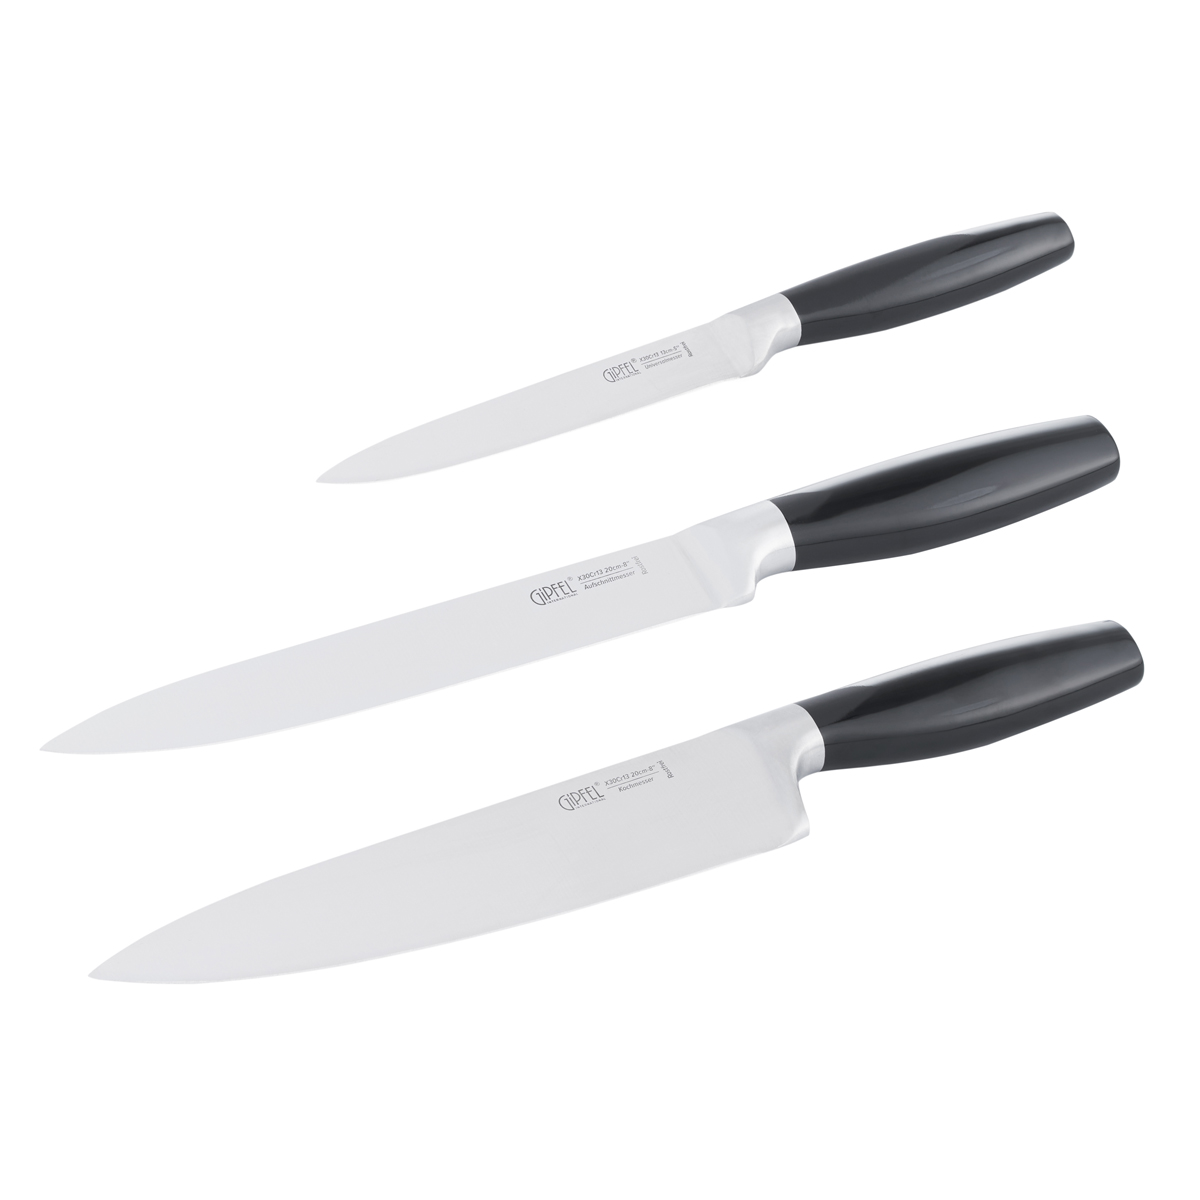 Набор ножей Gipfel Zooma 51025 3 предмета набор кухонных ножей gipfel 5 предметов с антипригарным покрытием 6770